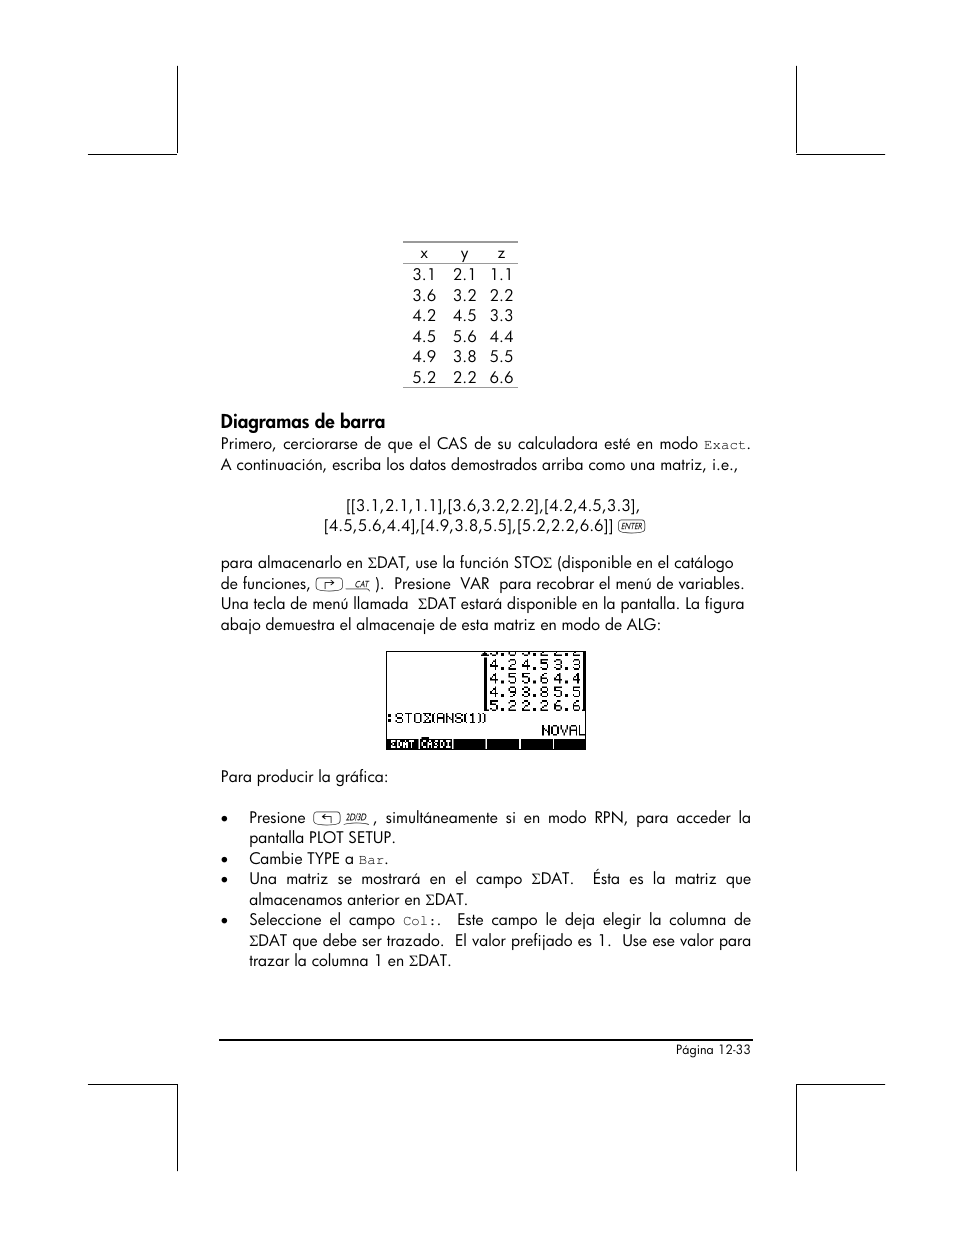 Diagramas de barra | HP Calculadora Gráfica HP 49g Manual del usuario | Página 422 / 891